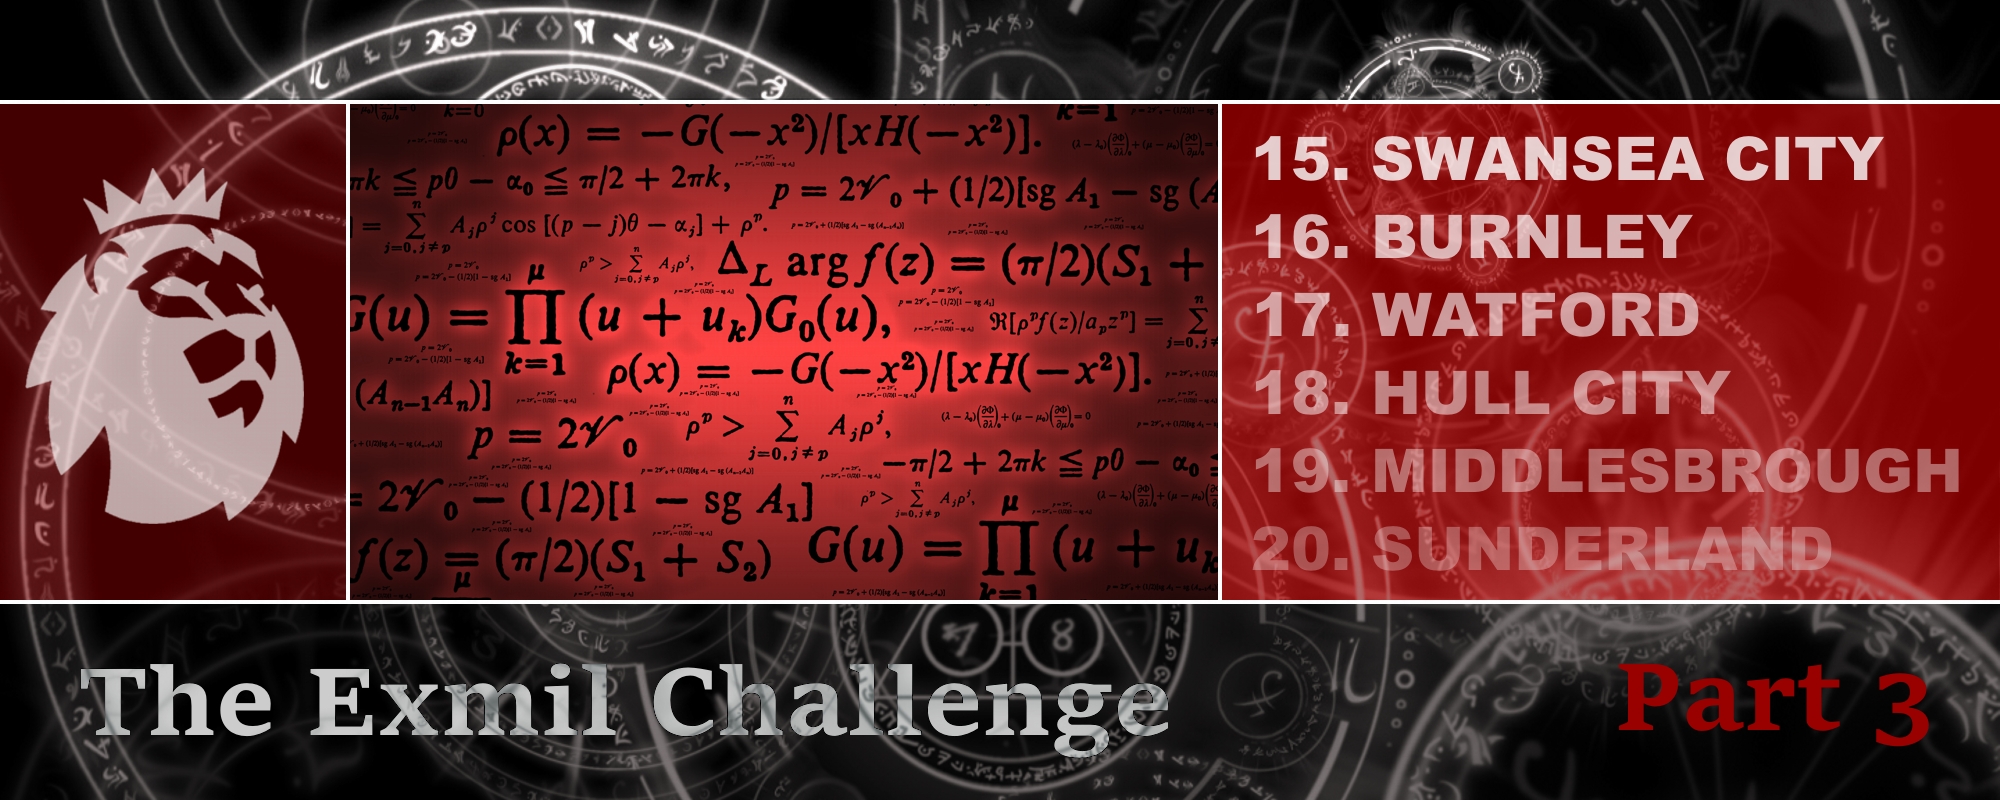 Exmil Challenge Part 3 - Header